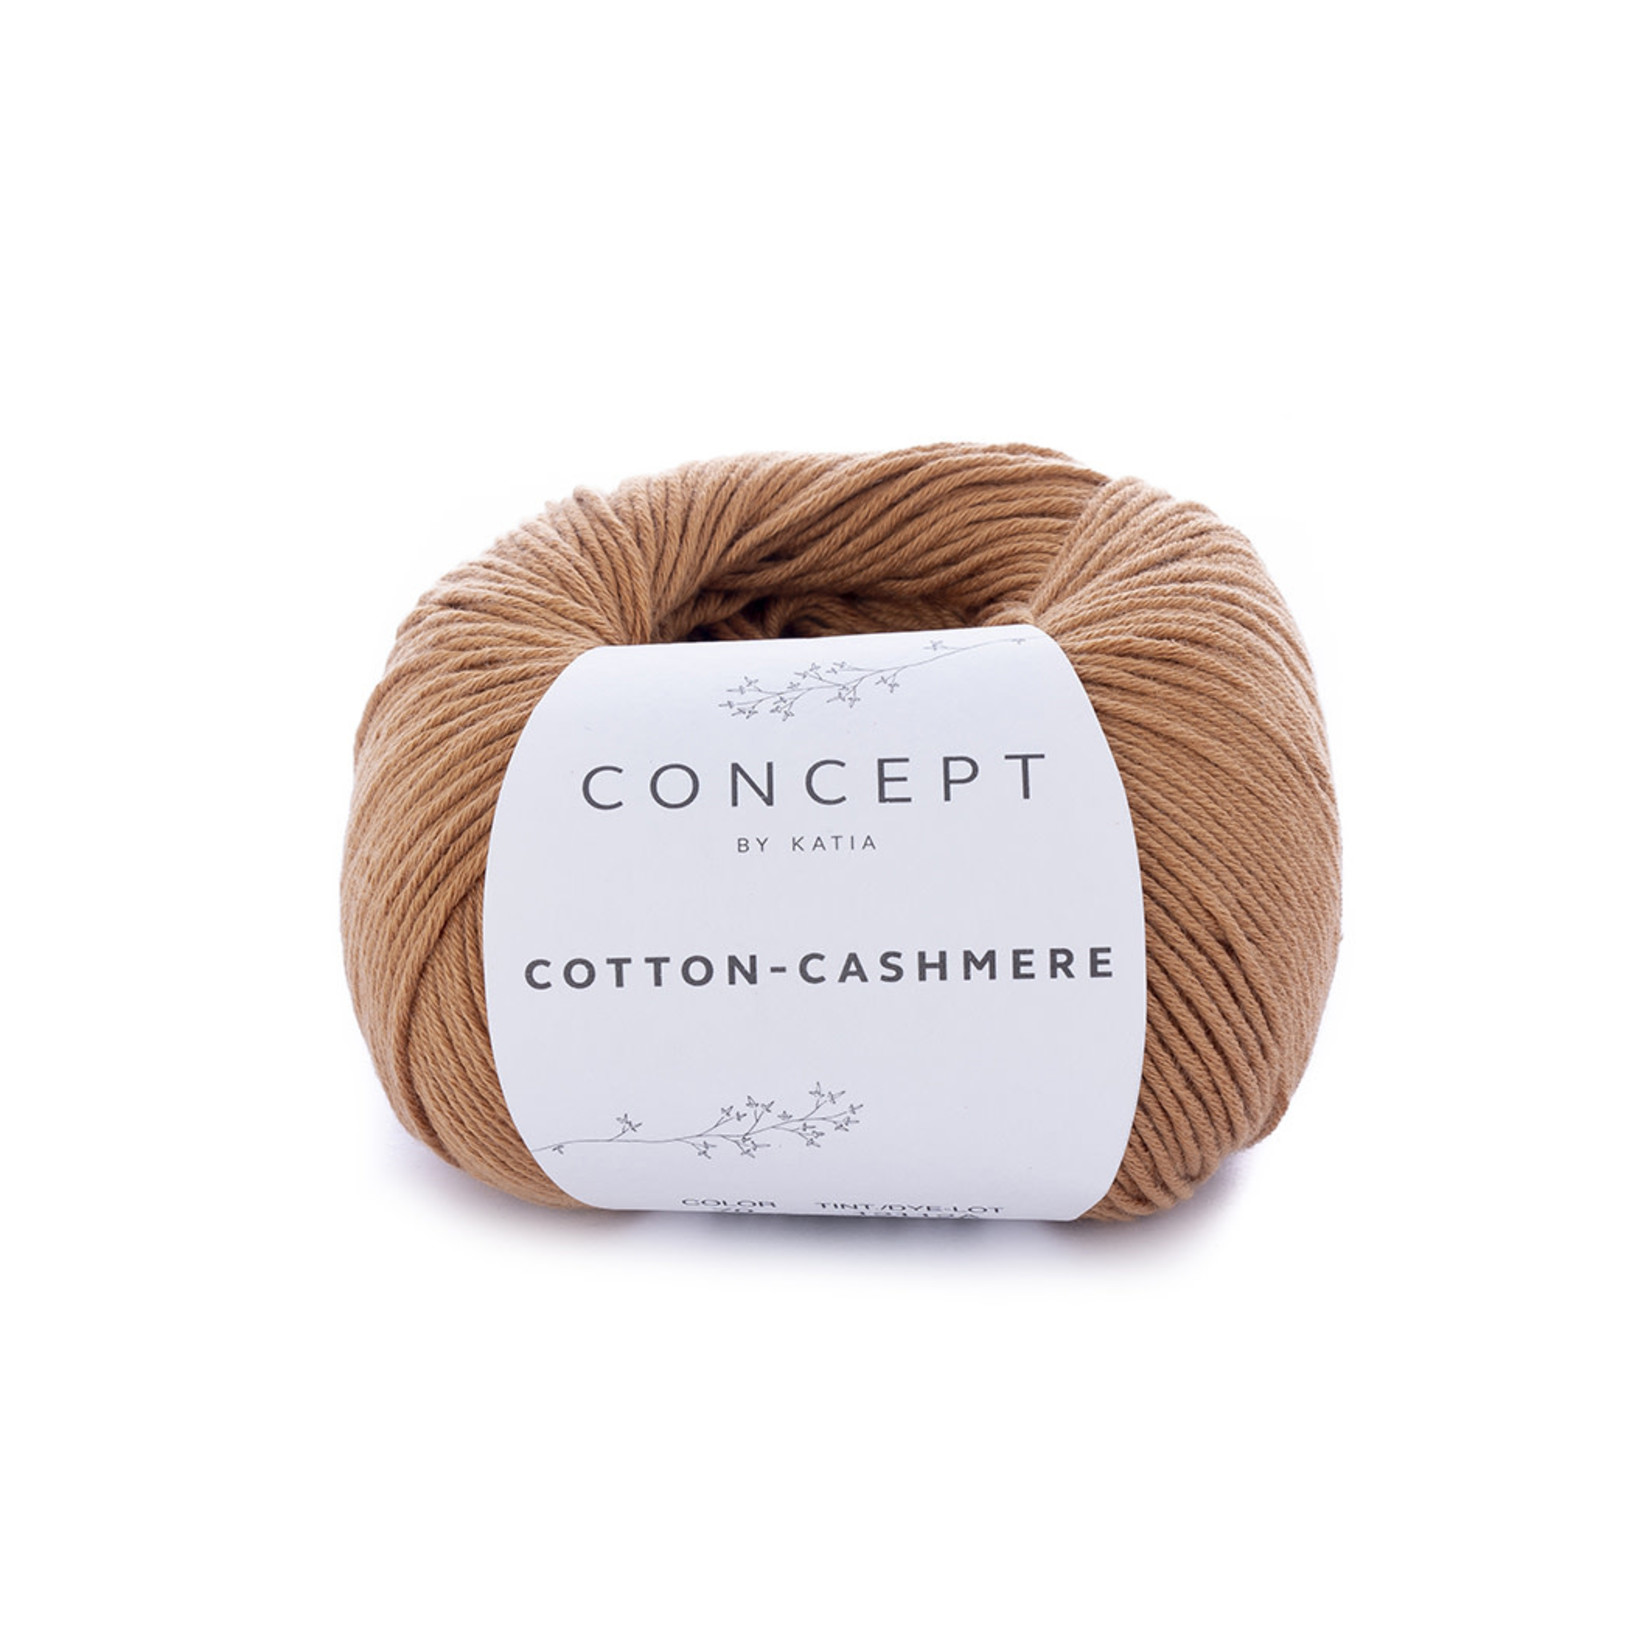 Concept by Katia Katia Concept Cotton Cashmere